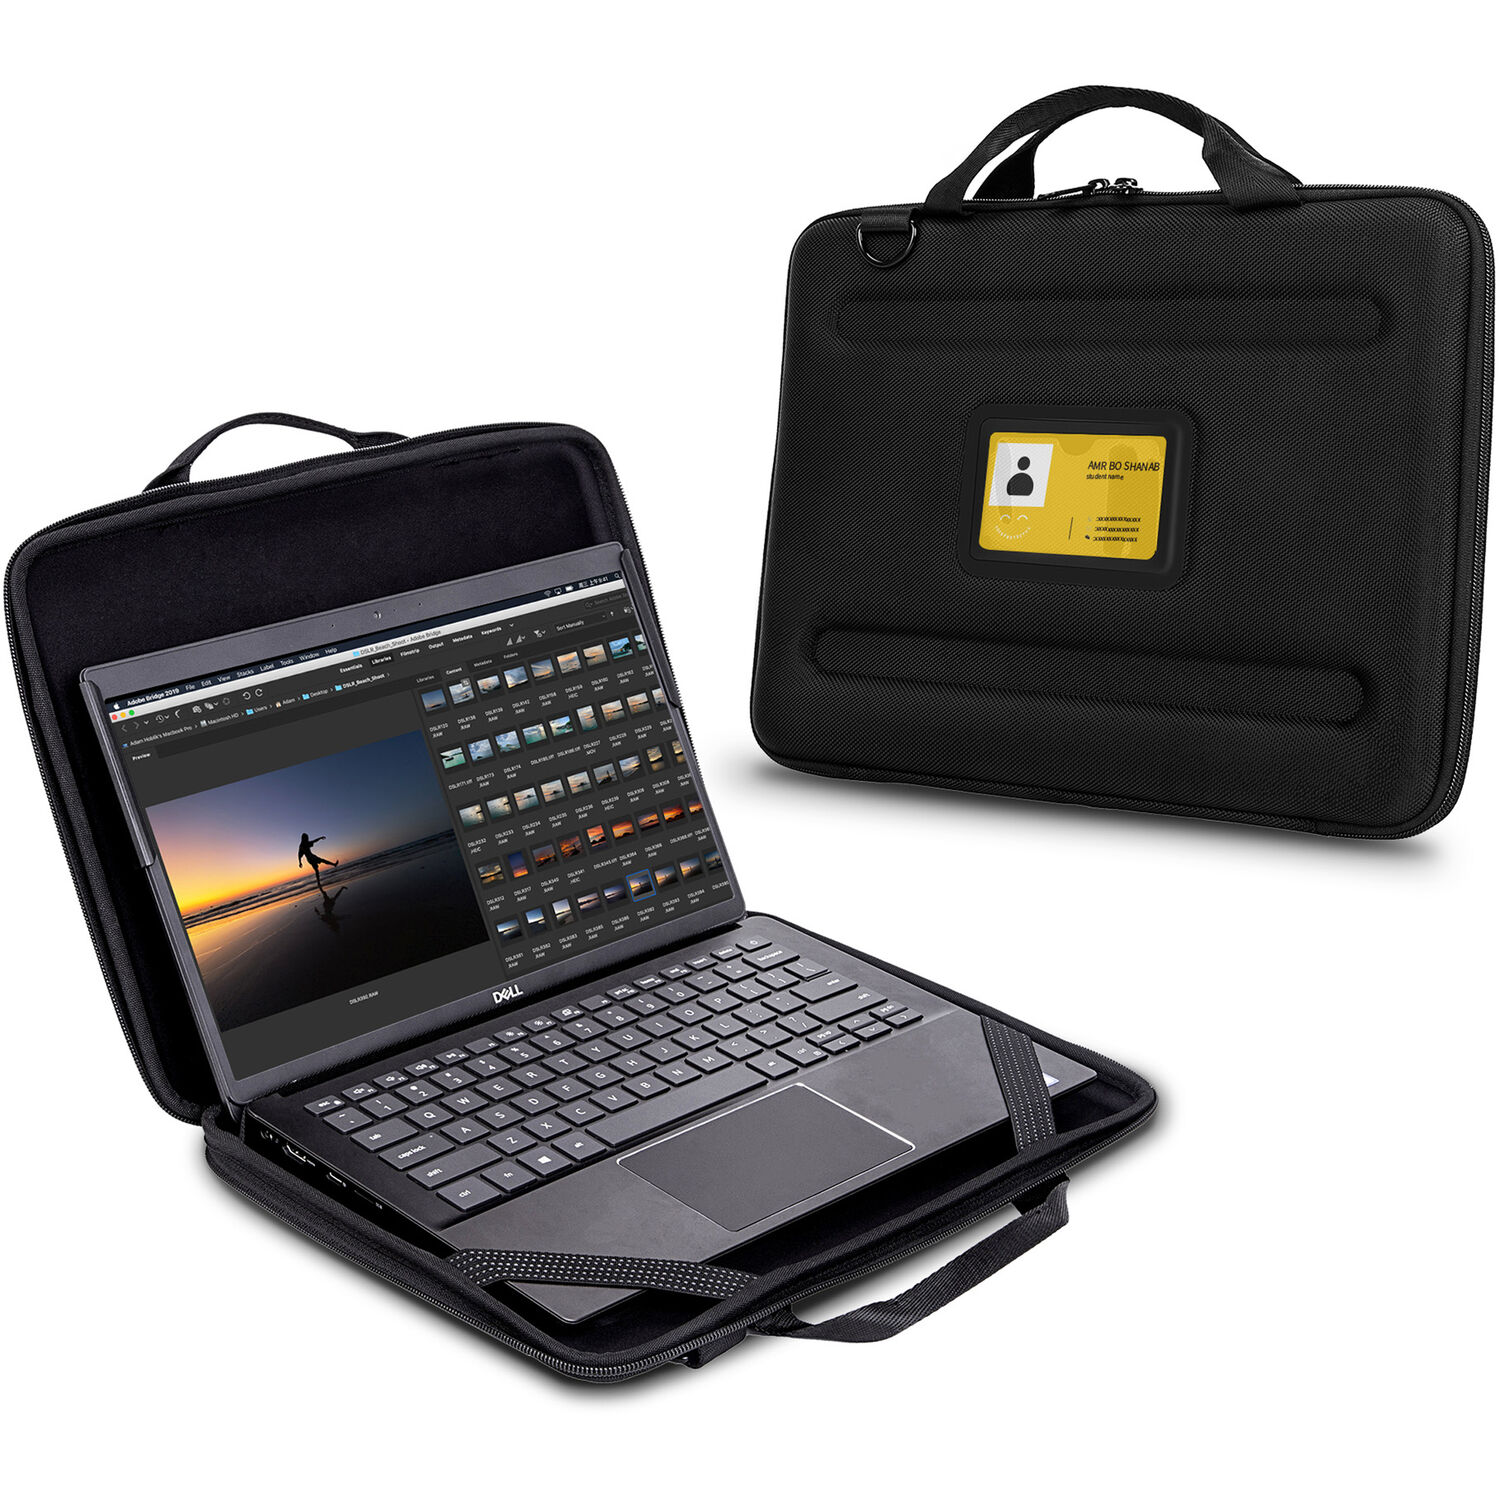 Funda de Transporte Techprotectus para Laptop y Chromebook de 13 15 con Bolsillo Incorporado